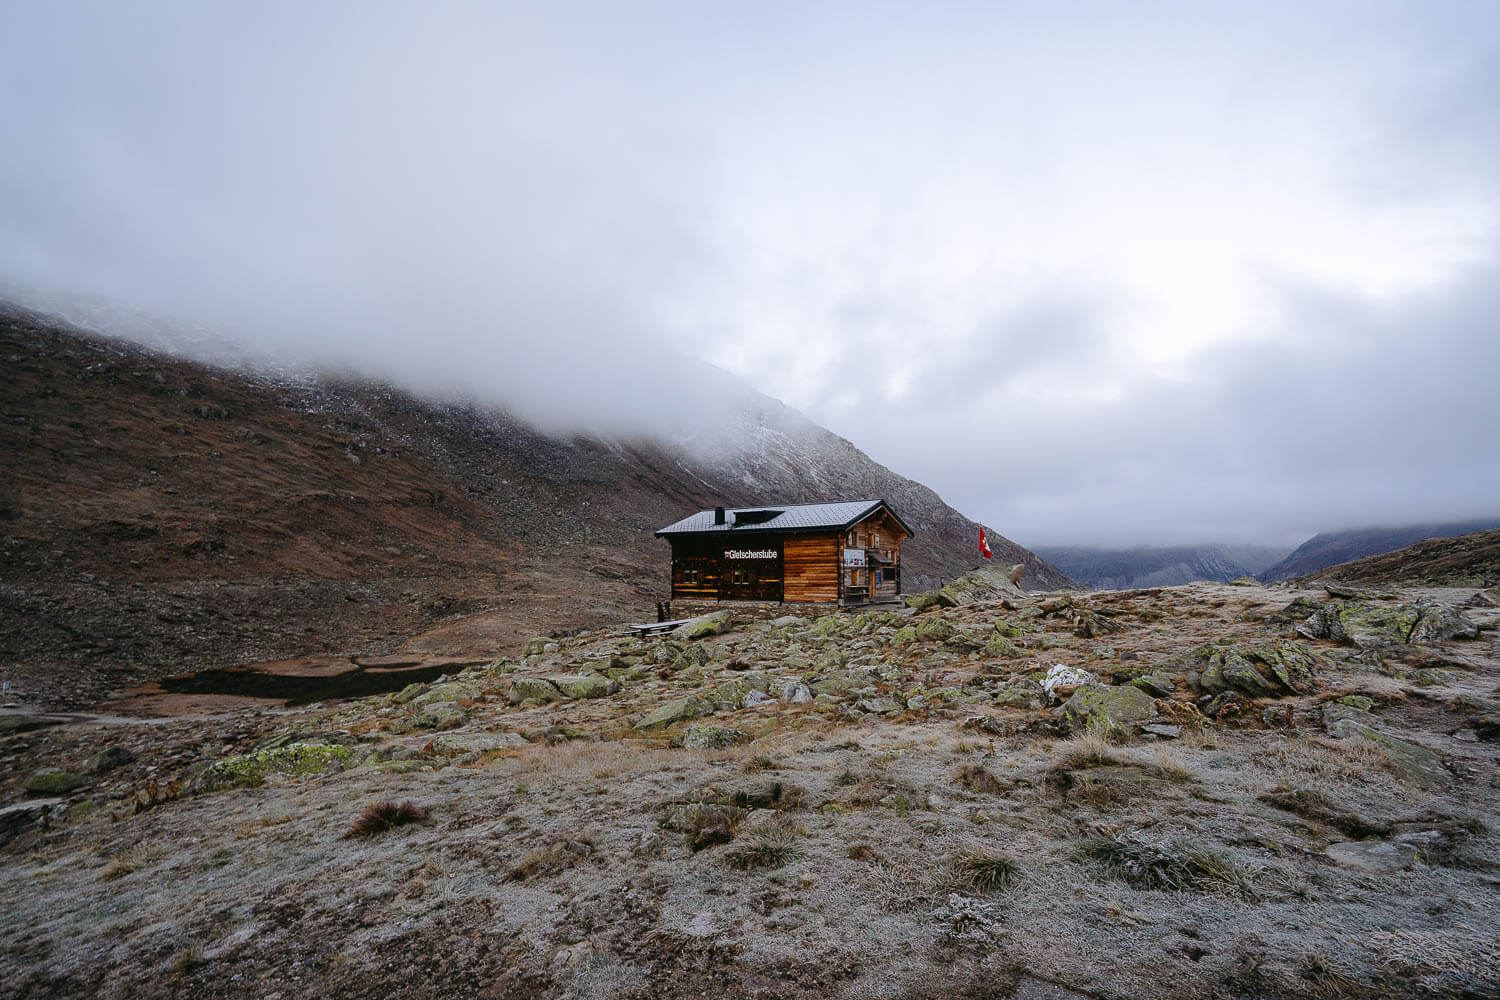 The Gletscherstube mountain hut